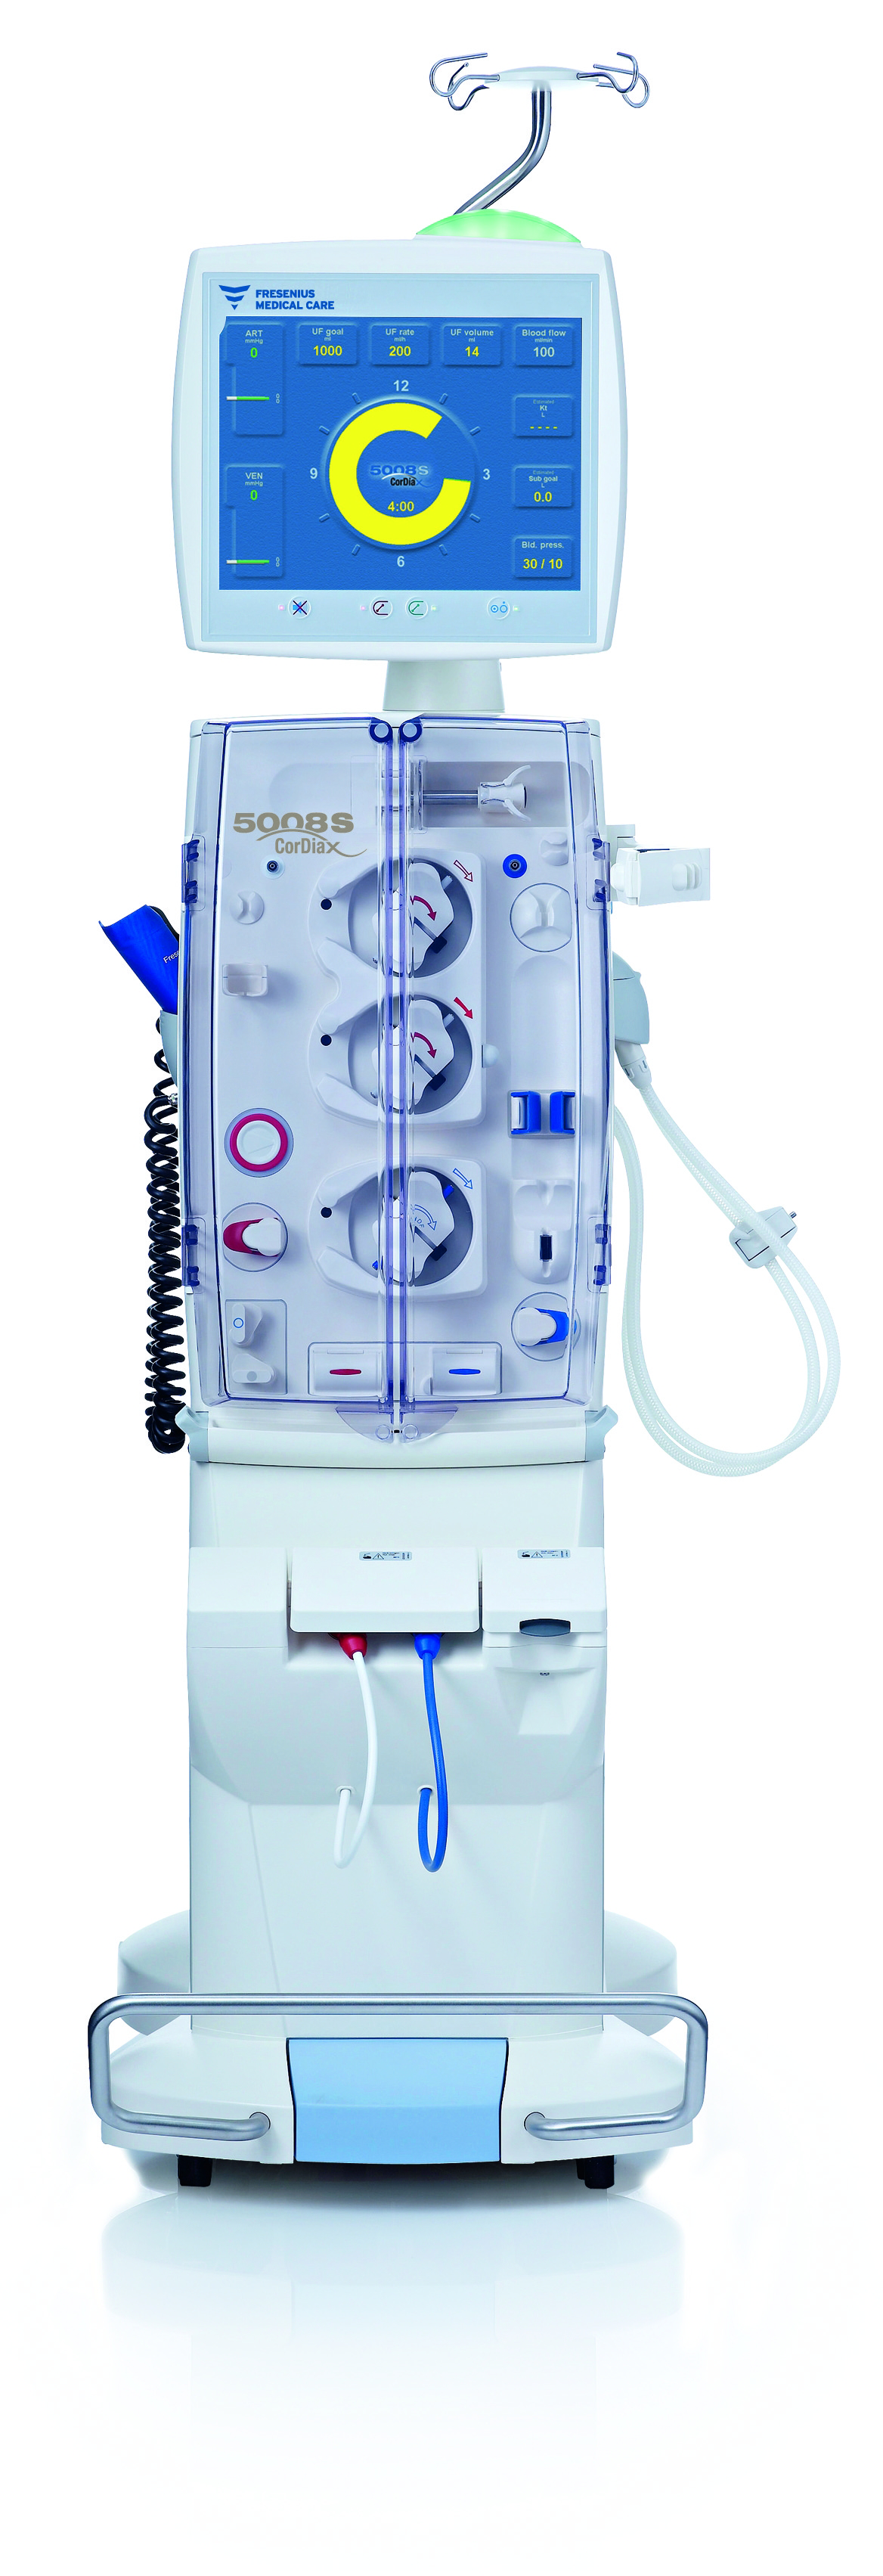 Fresenius Medical Care In-center dialysis | 5008S machine